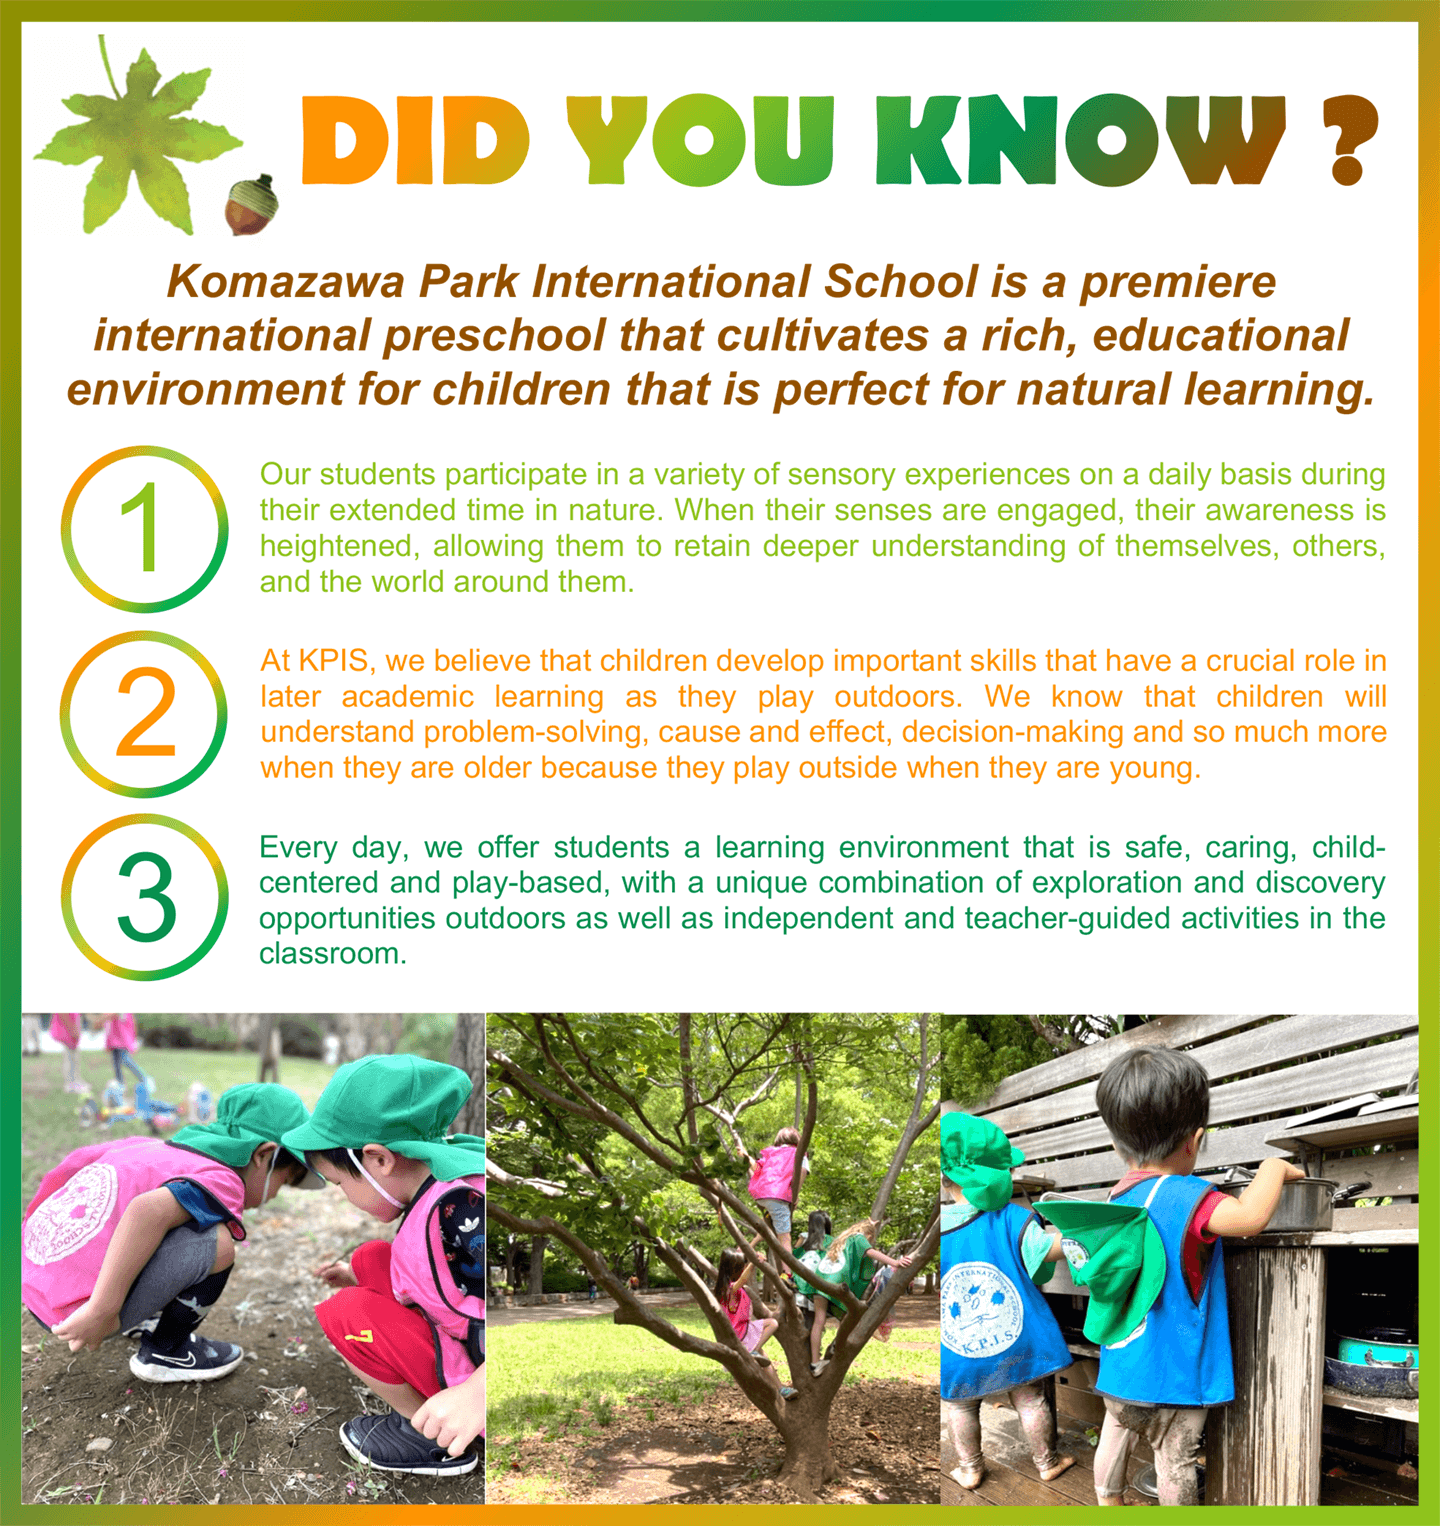 Komazawa park international school | Did You Know